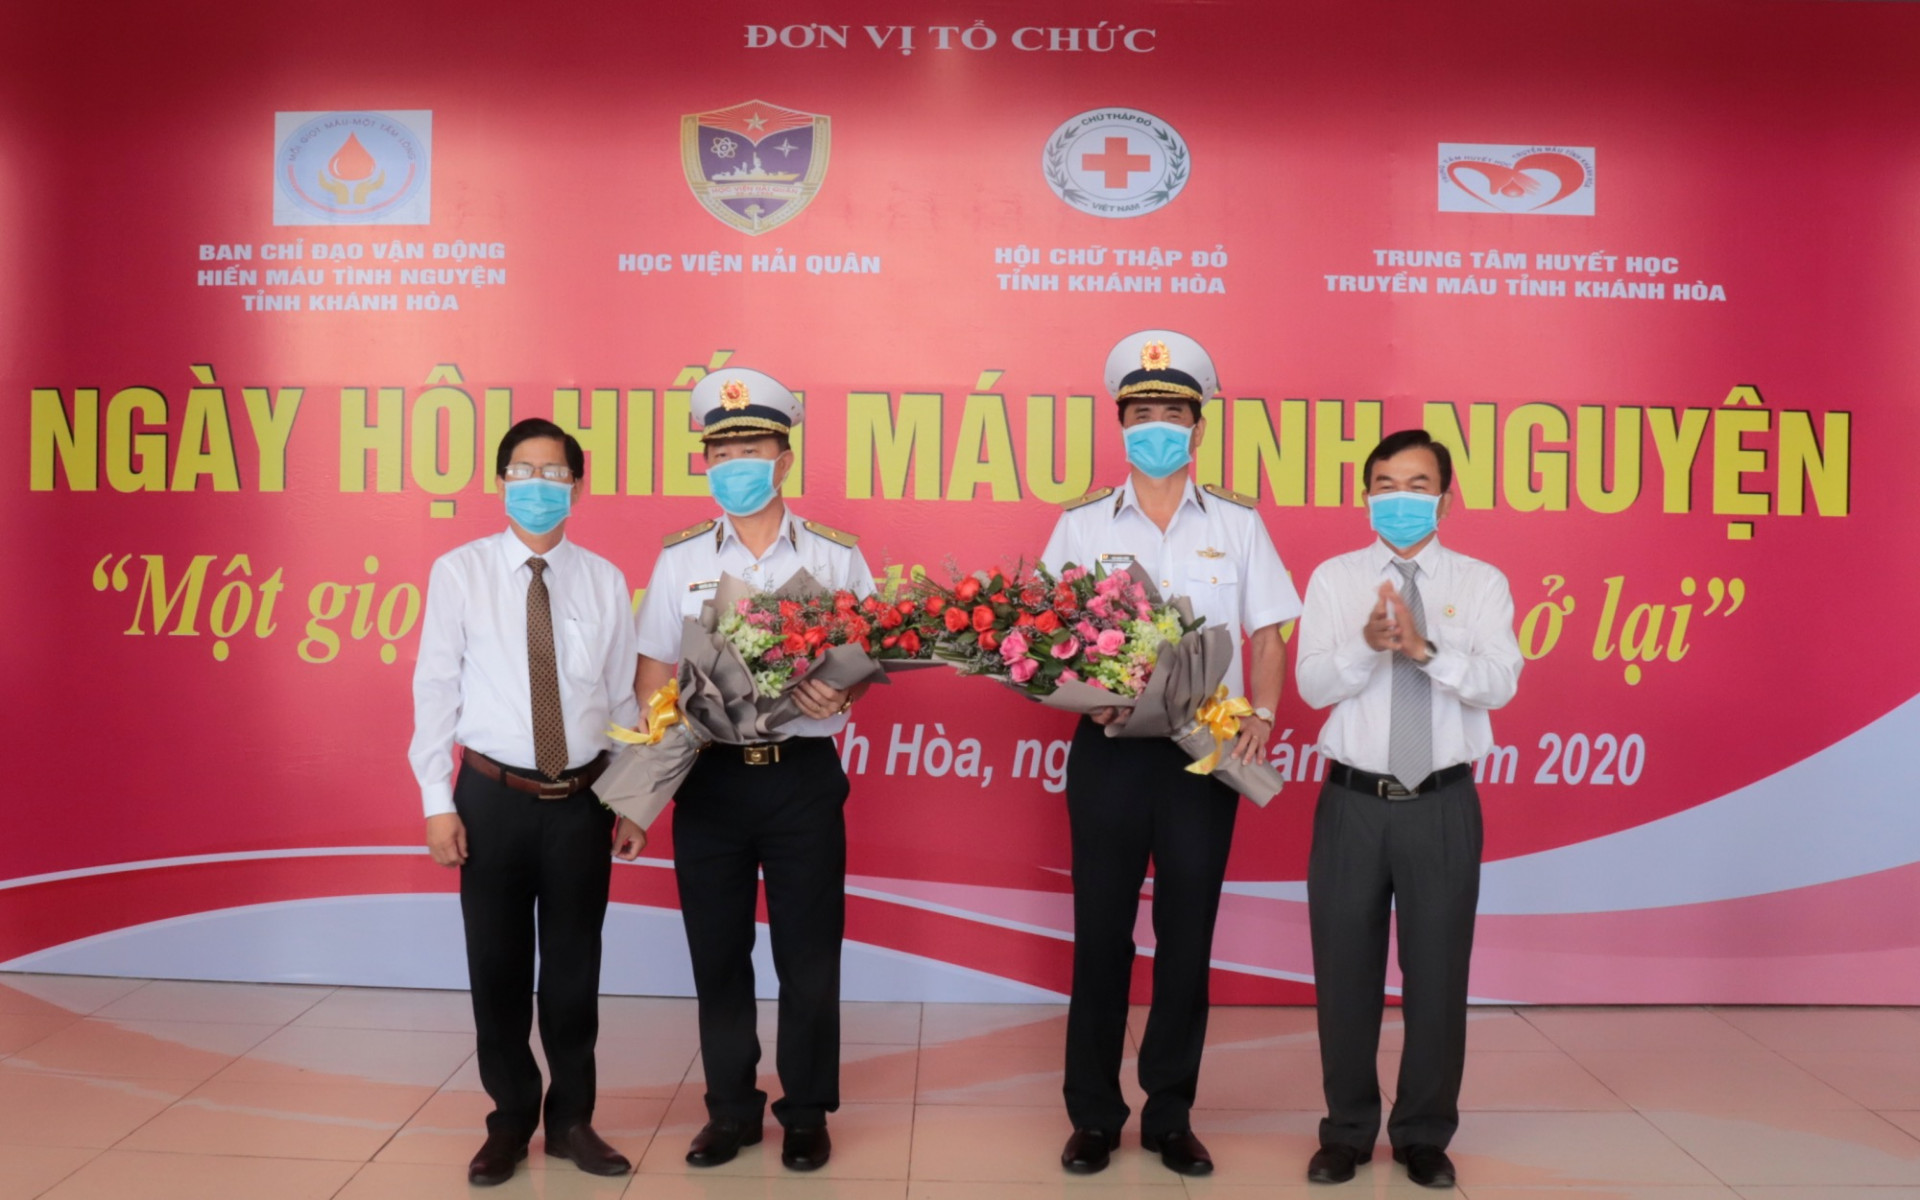 Ông Nguyễn Tấn Tuân trao tặng hoa cho lãnh đạo Học viện Hải quân